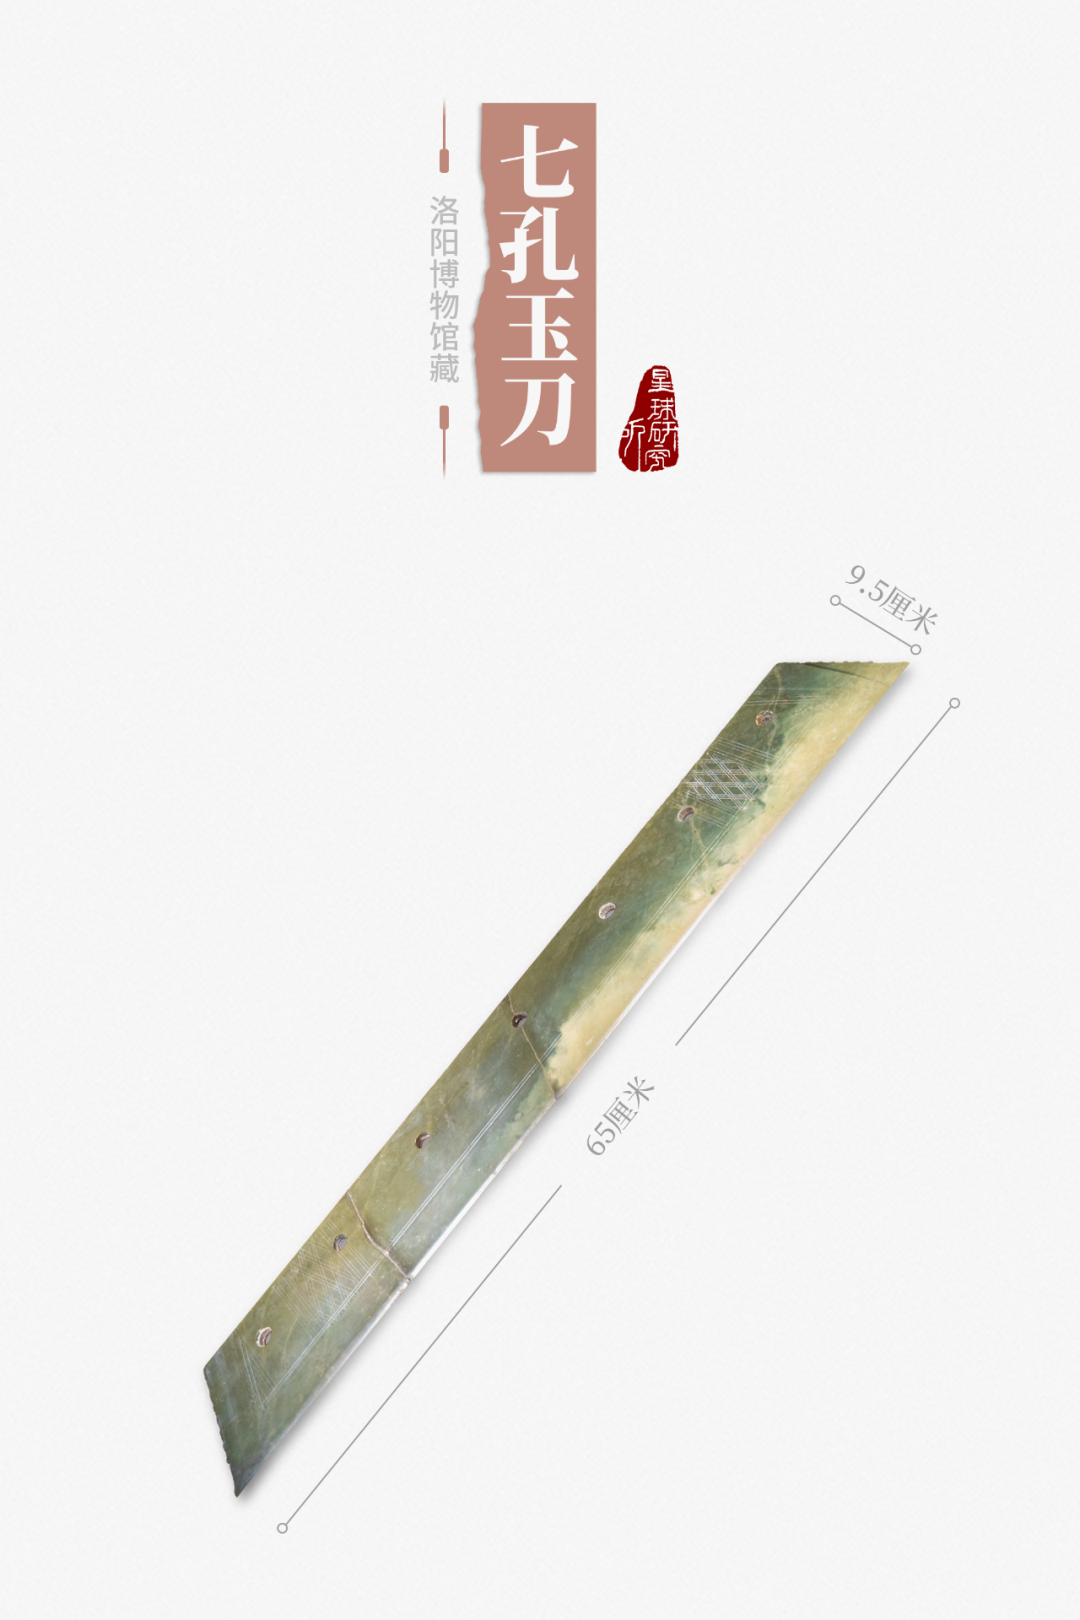 ▼(七孔玉刀,摄影师@丁俊豪)长达65厘米的玉刀人们可以制造显示出它是